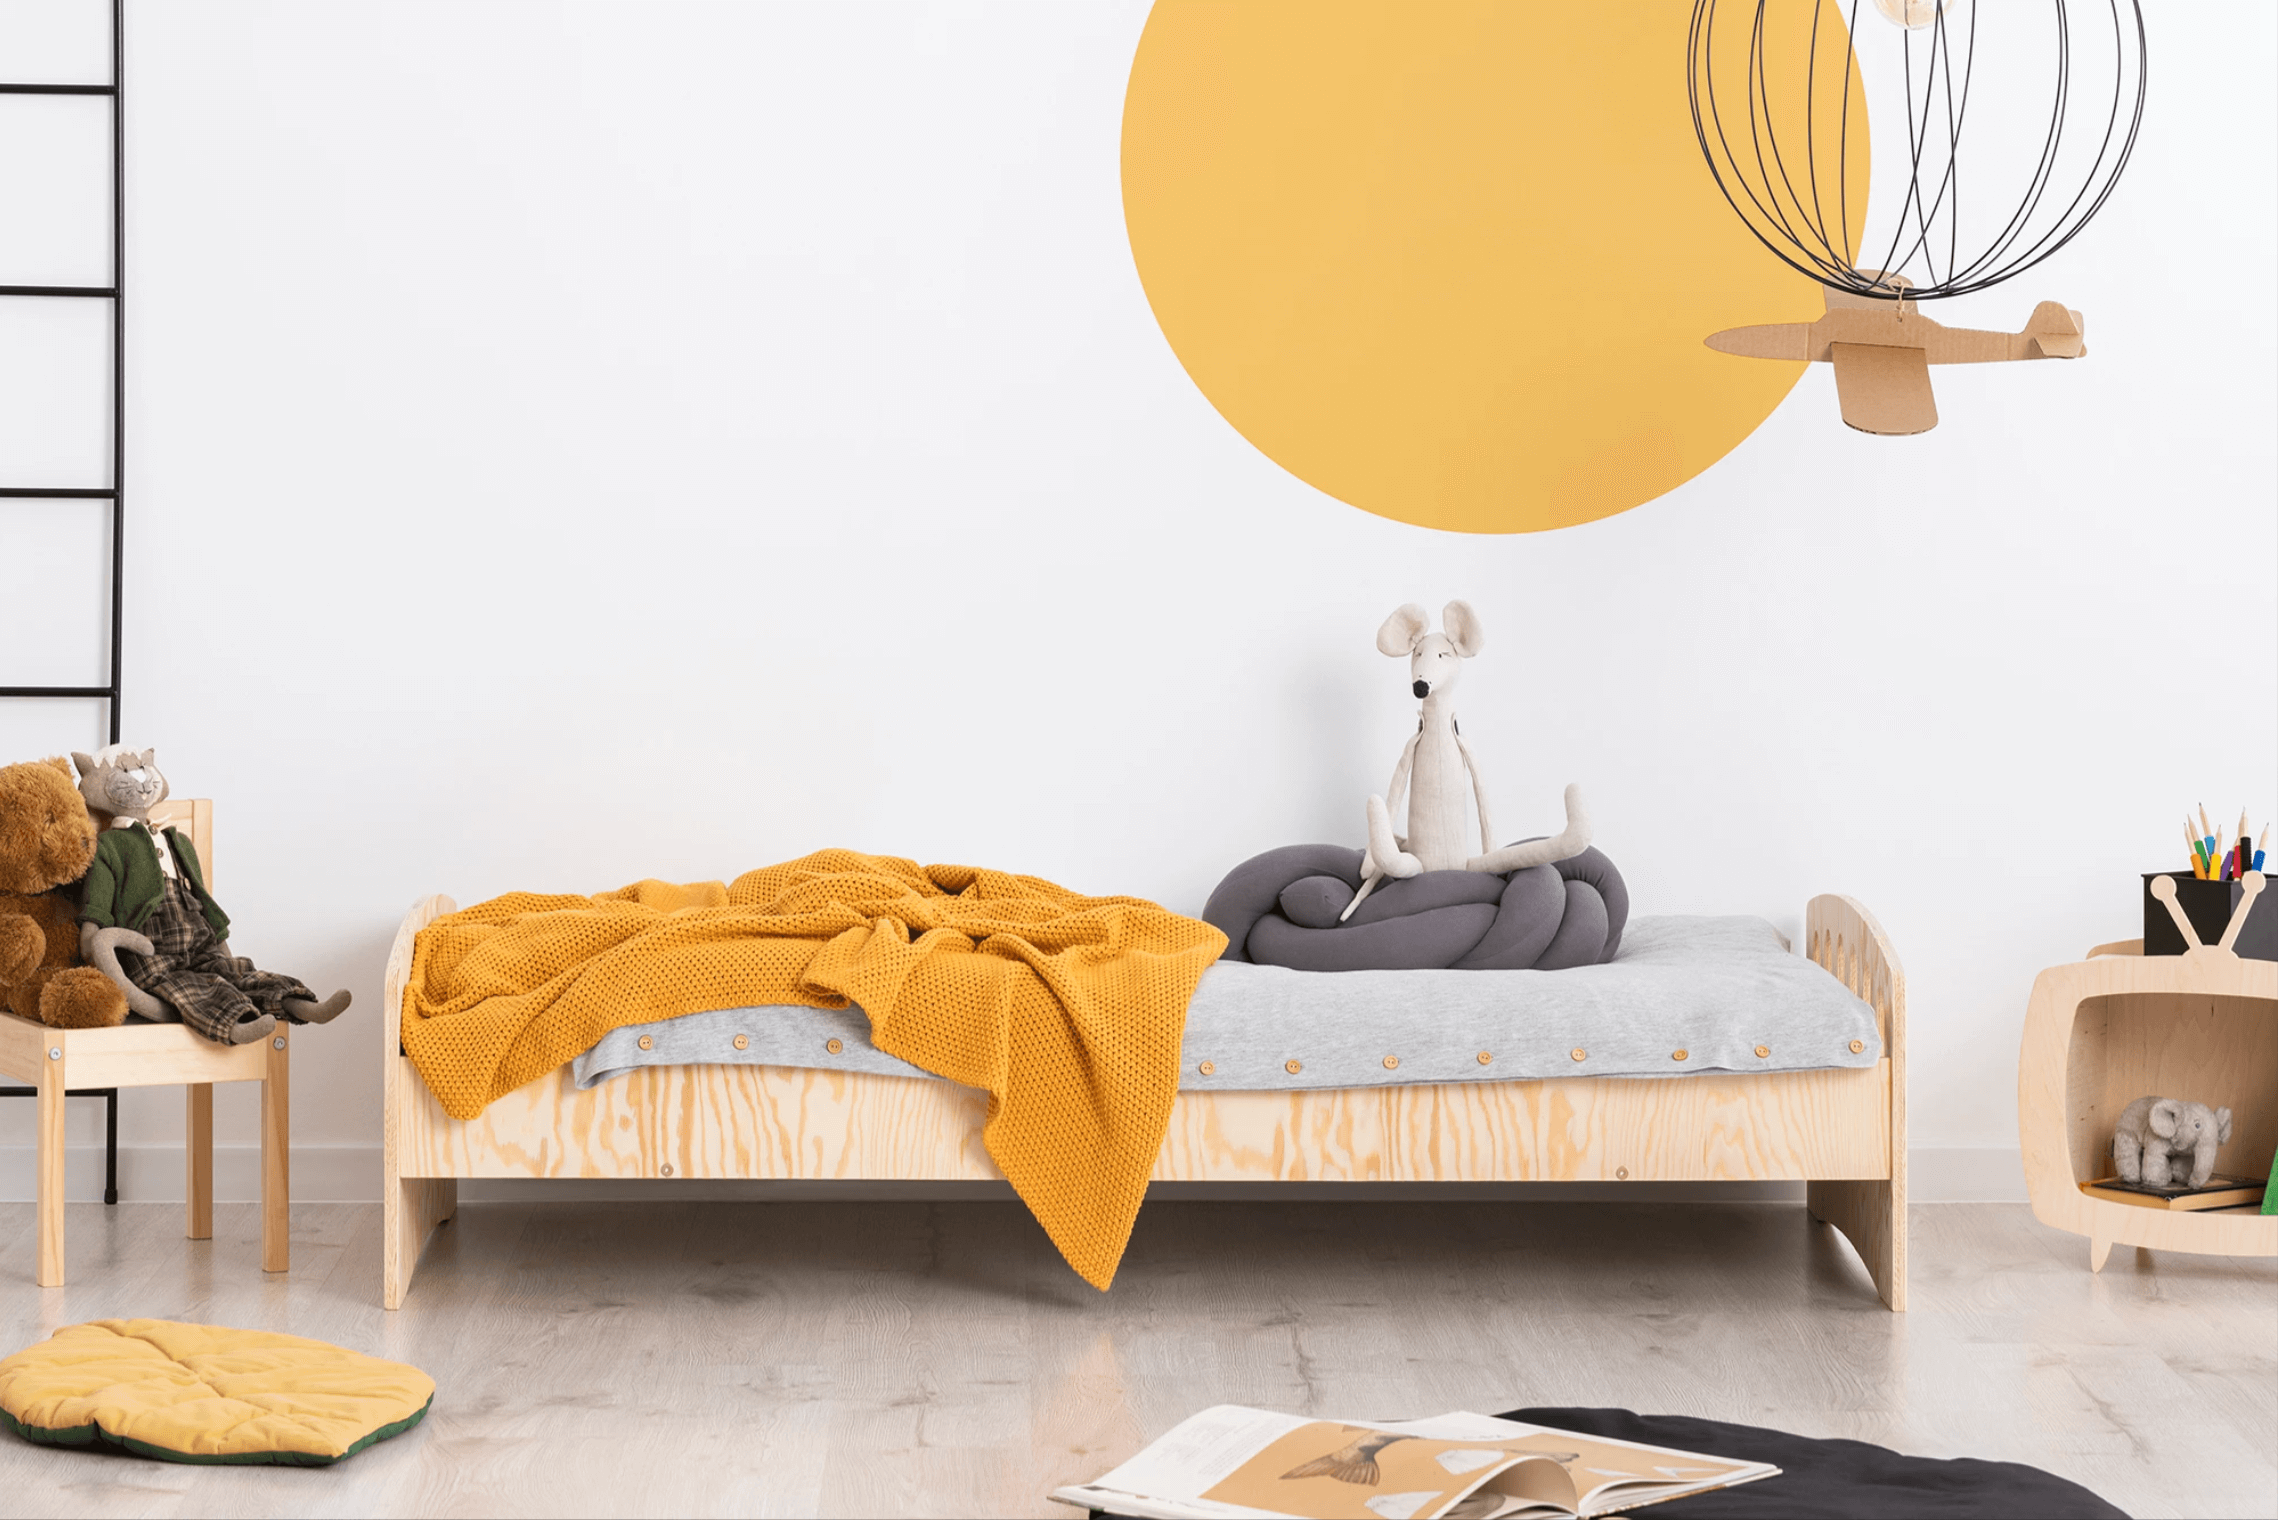 Literas, nido, Montessori… Las mejores camas para tus hijos según